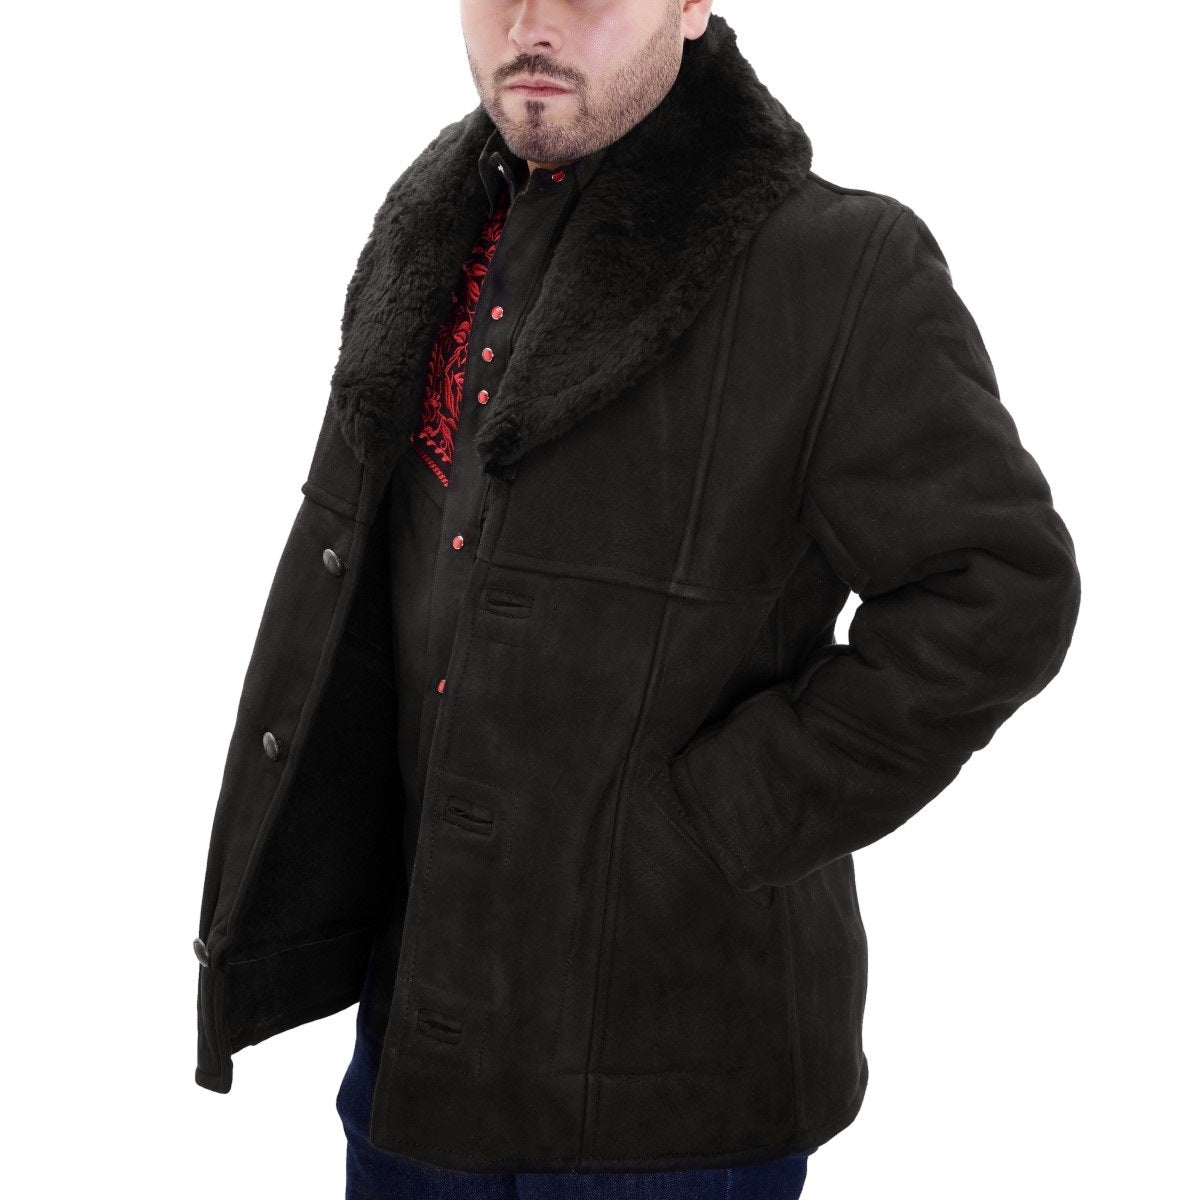 Chamarra de piel para Hombre TM-WD1830 Leather Jacket for Men